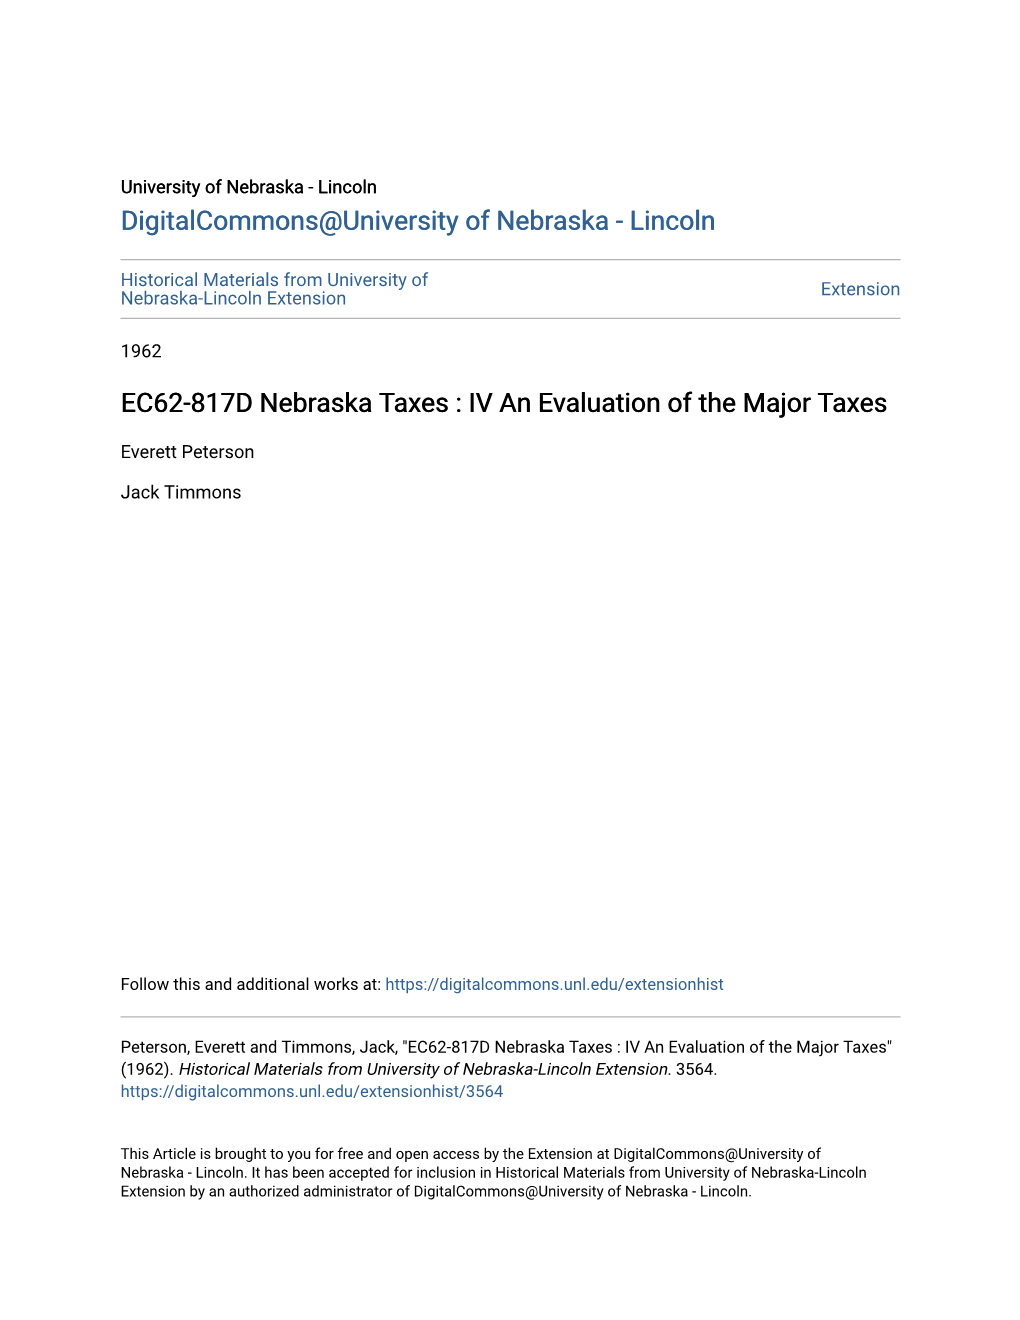 EC62-817D Nebraska Taxes : IV an Evaluation of the Major Taxes